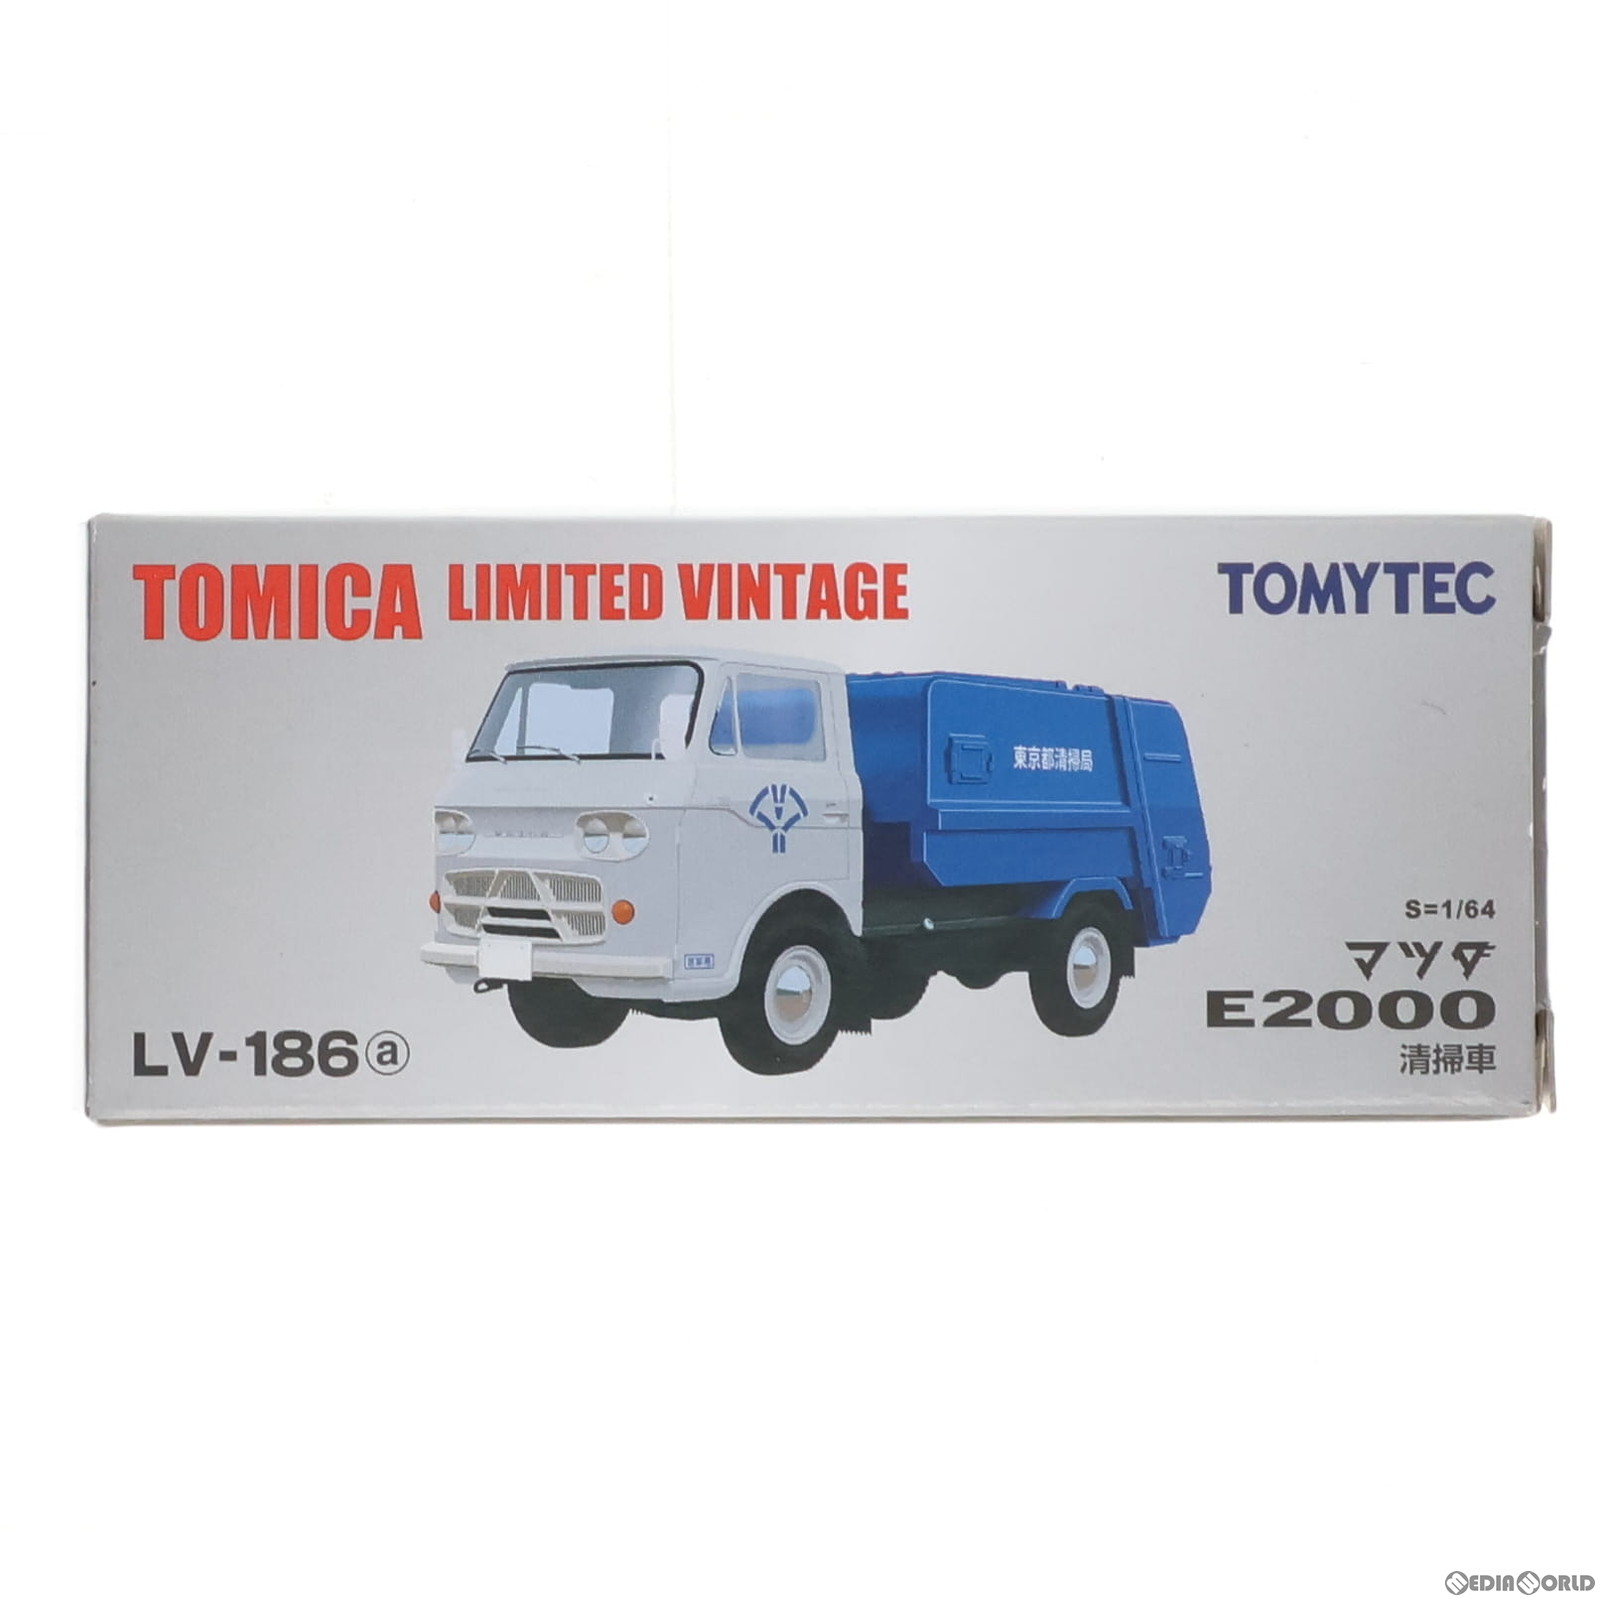 【中古】 MDL トミカリミテッドヴィンテージ LV-186a マツダ E2000 清掃車(白/青) 1/64 完成品 ミニカー(310877) TOMYTEC(トミーテック)(20200711)